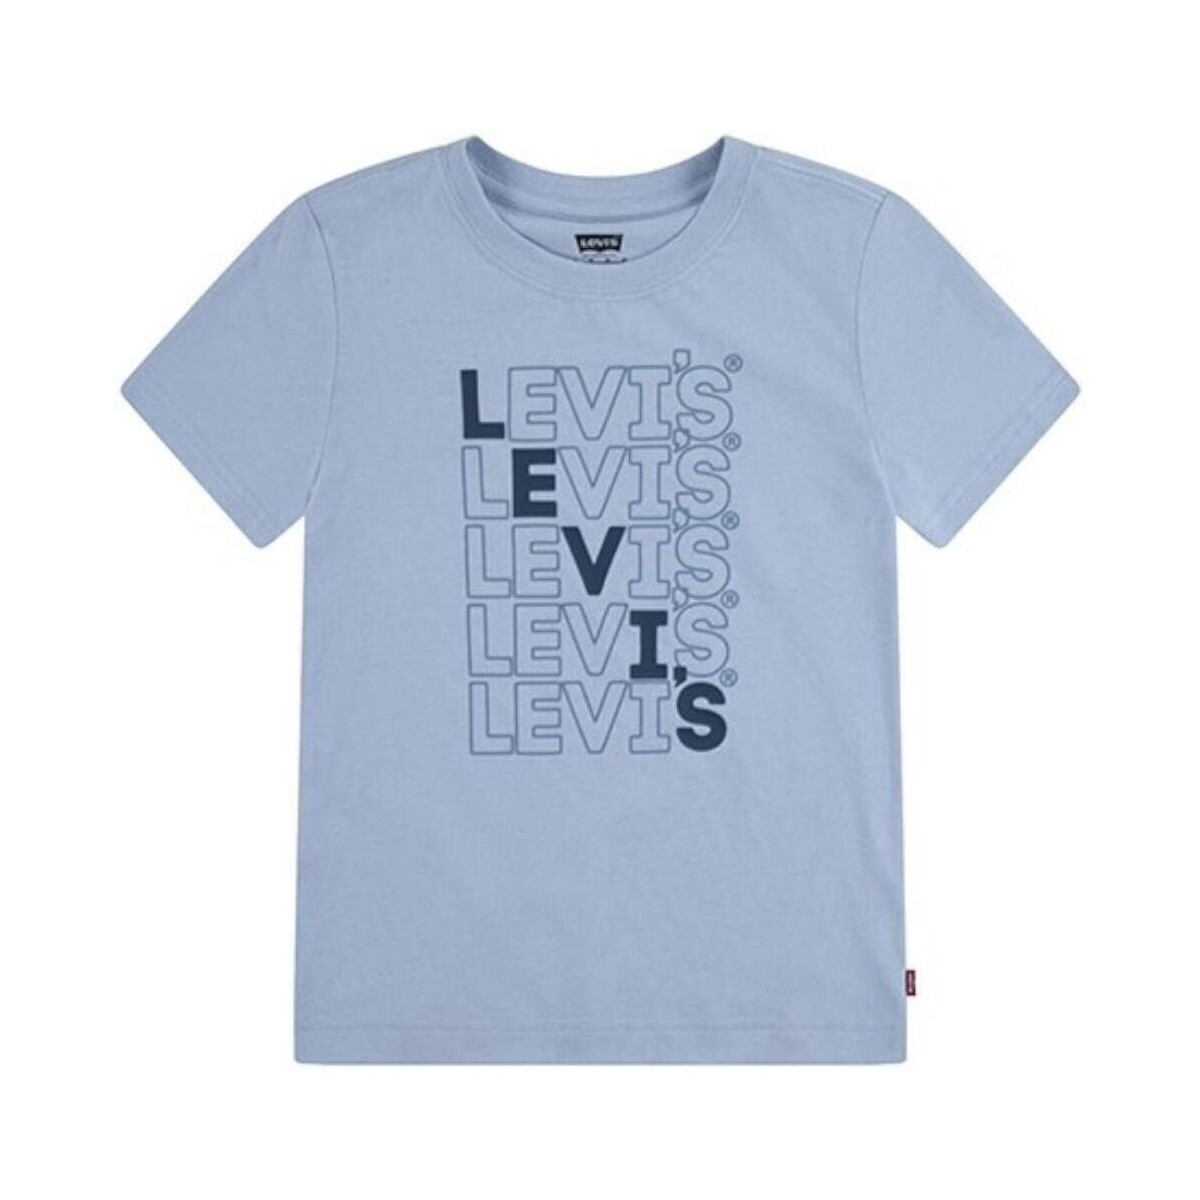 Vêtements Garçon T-shirts manches courtes Levi's  Bleu